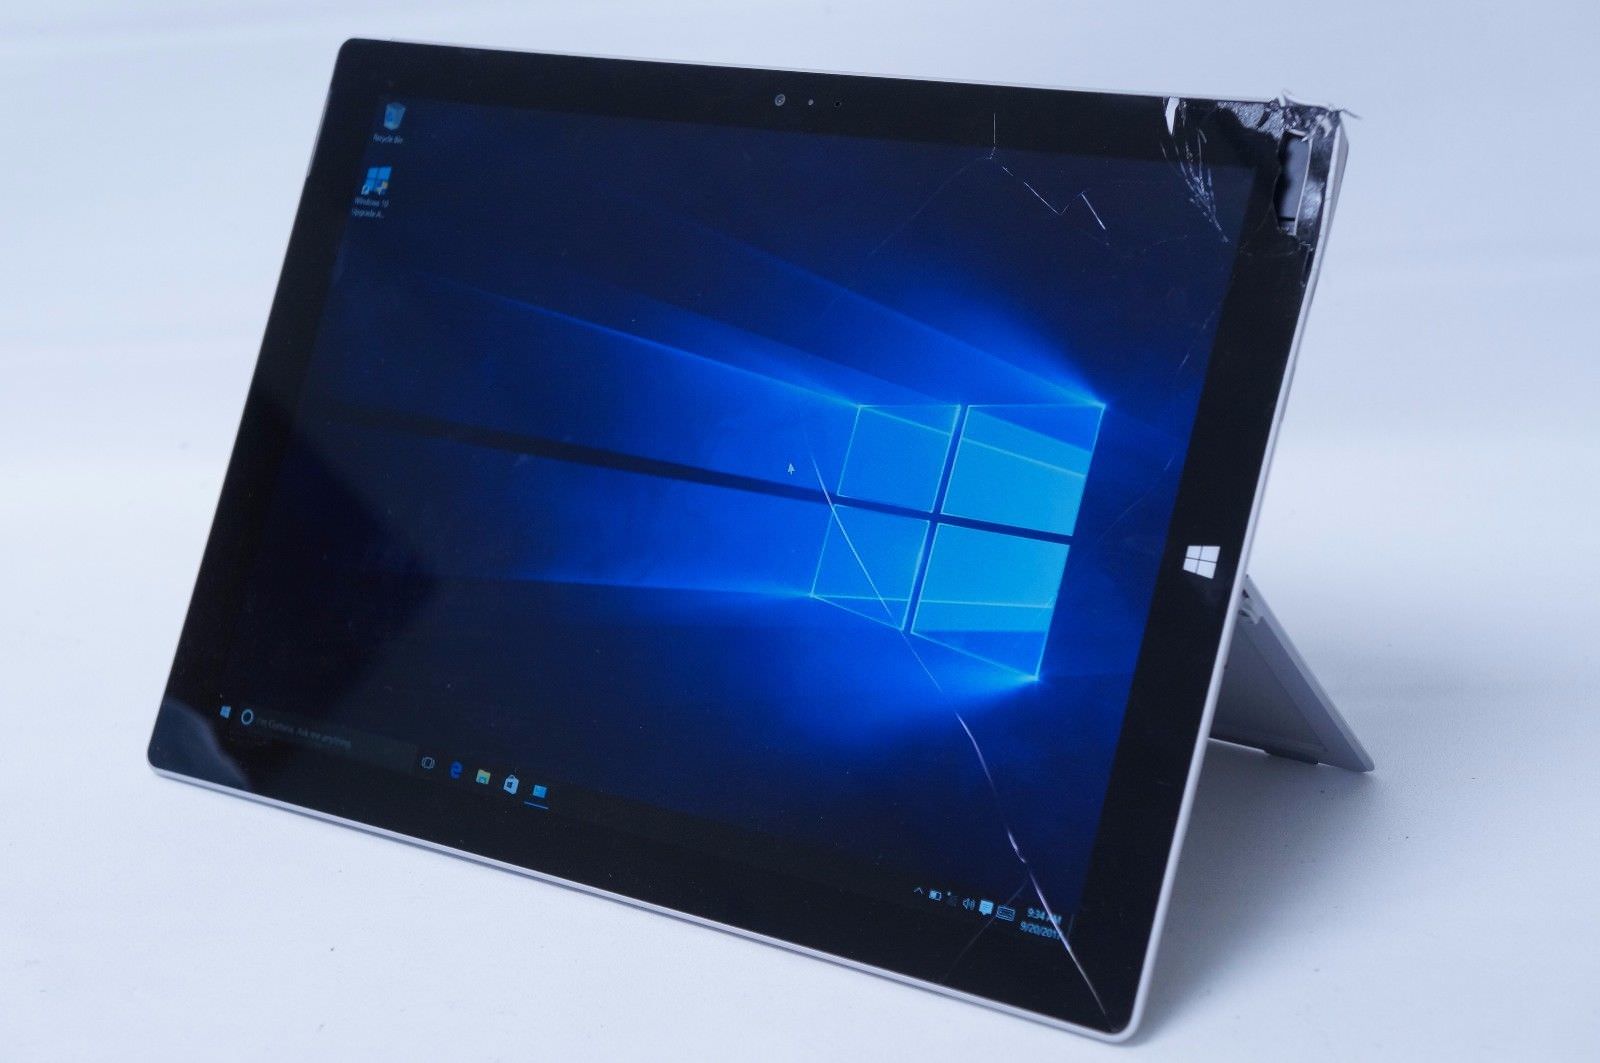 Thay màn hình Surface Pro 3 tại Đà Nẵng - Giá rẻ, lấy ngay